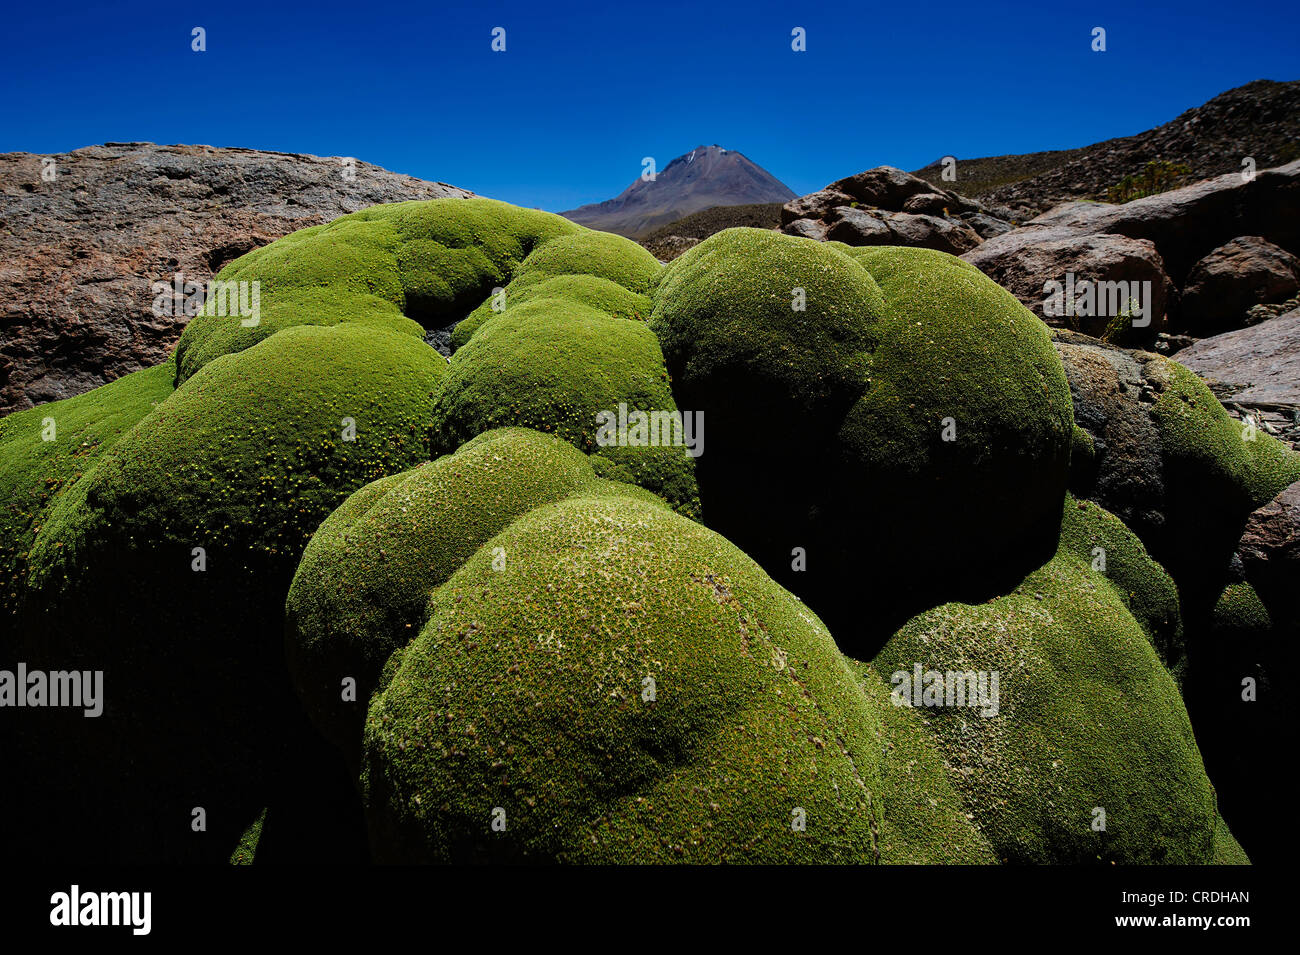 Yareta ou Llareta (Azorella compacta), coussin avec volcan, Uyuni, Bolivie, Amérique du Sud Banque D'Images